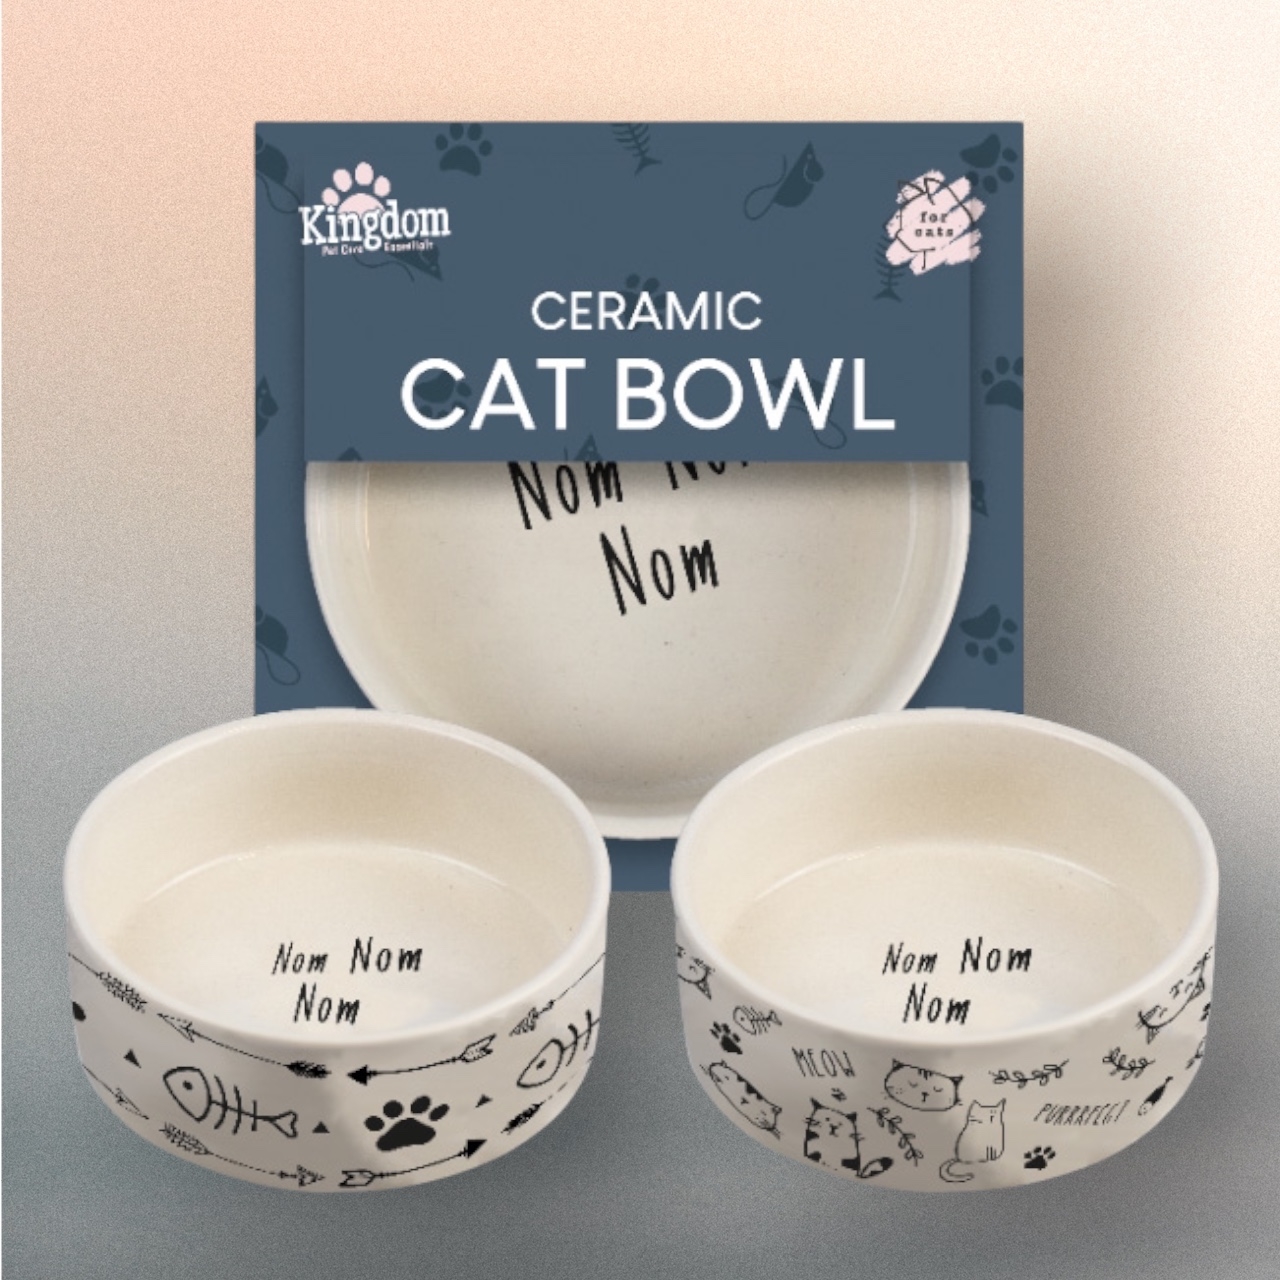 Ceramic Cat Bowl Nom Nom Nom